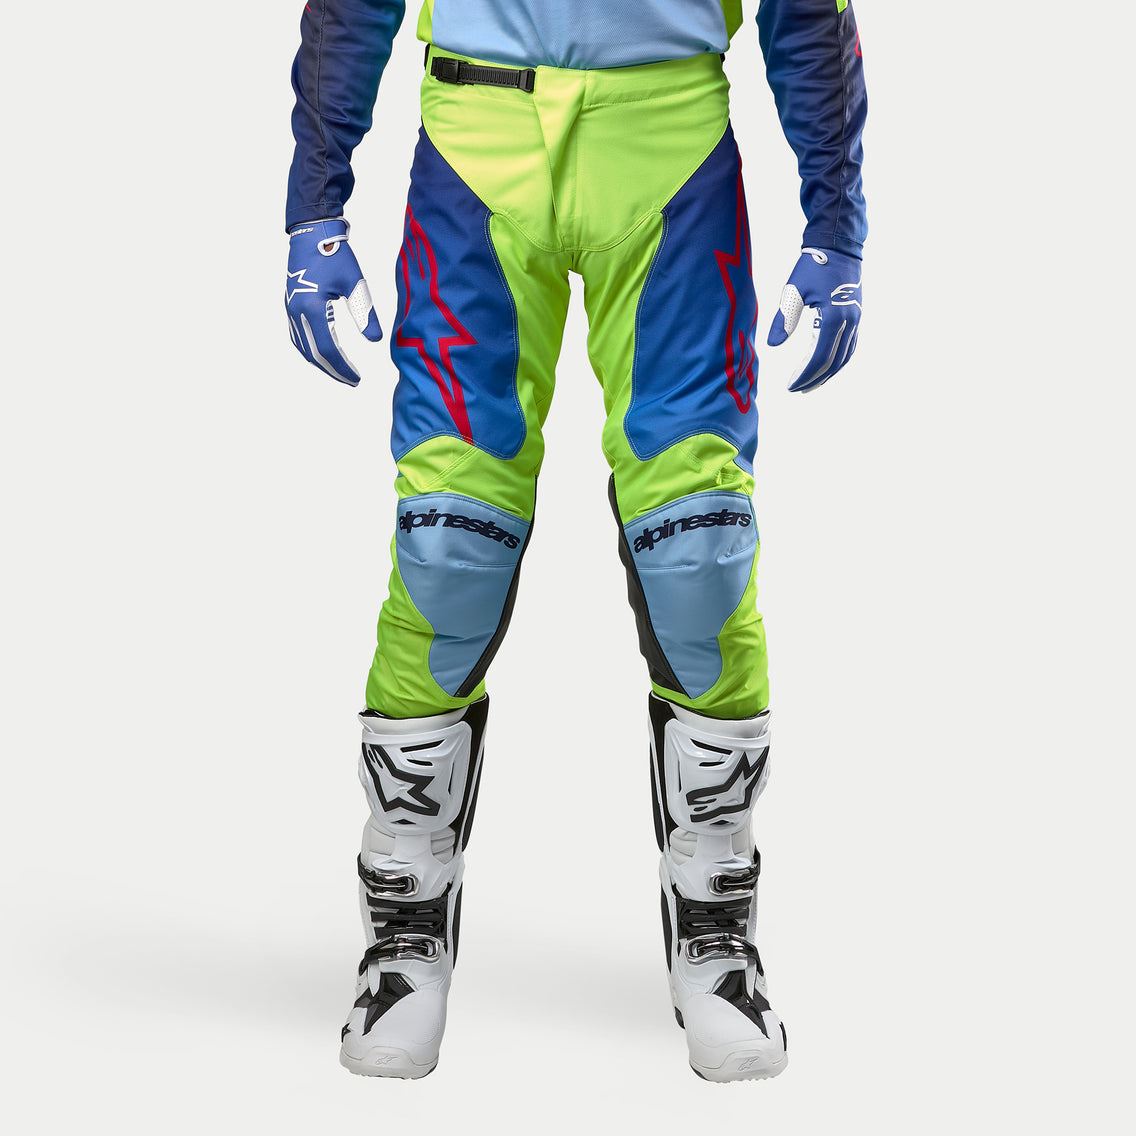 Alpinestars 2024 Racer Hoen Motocross Combo Kit Pants & Jersey Yellow Fluo Blue Night Navy